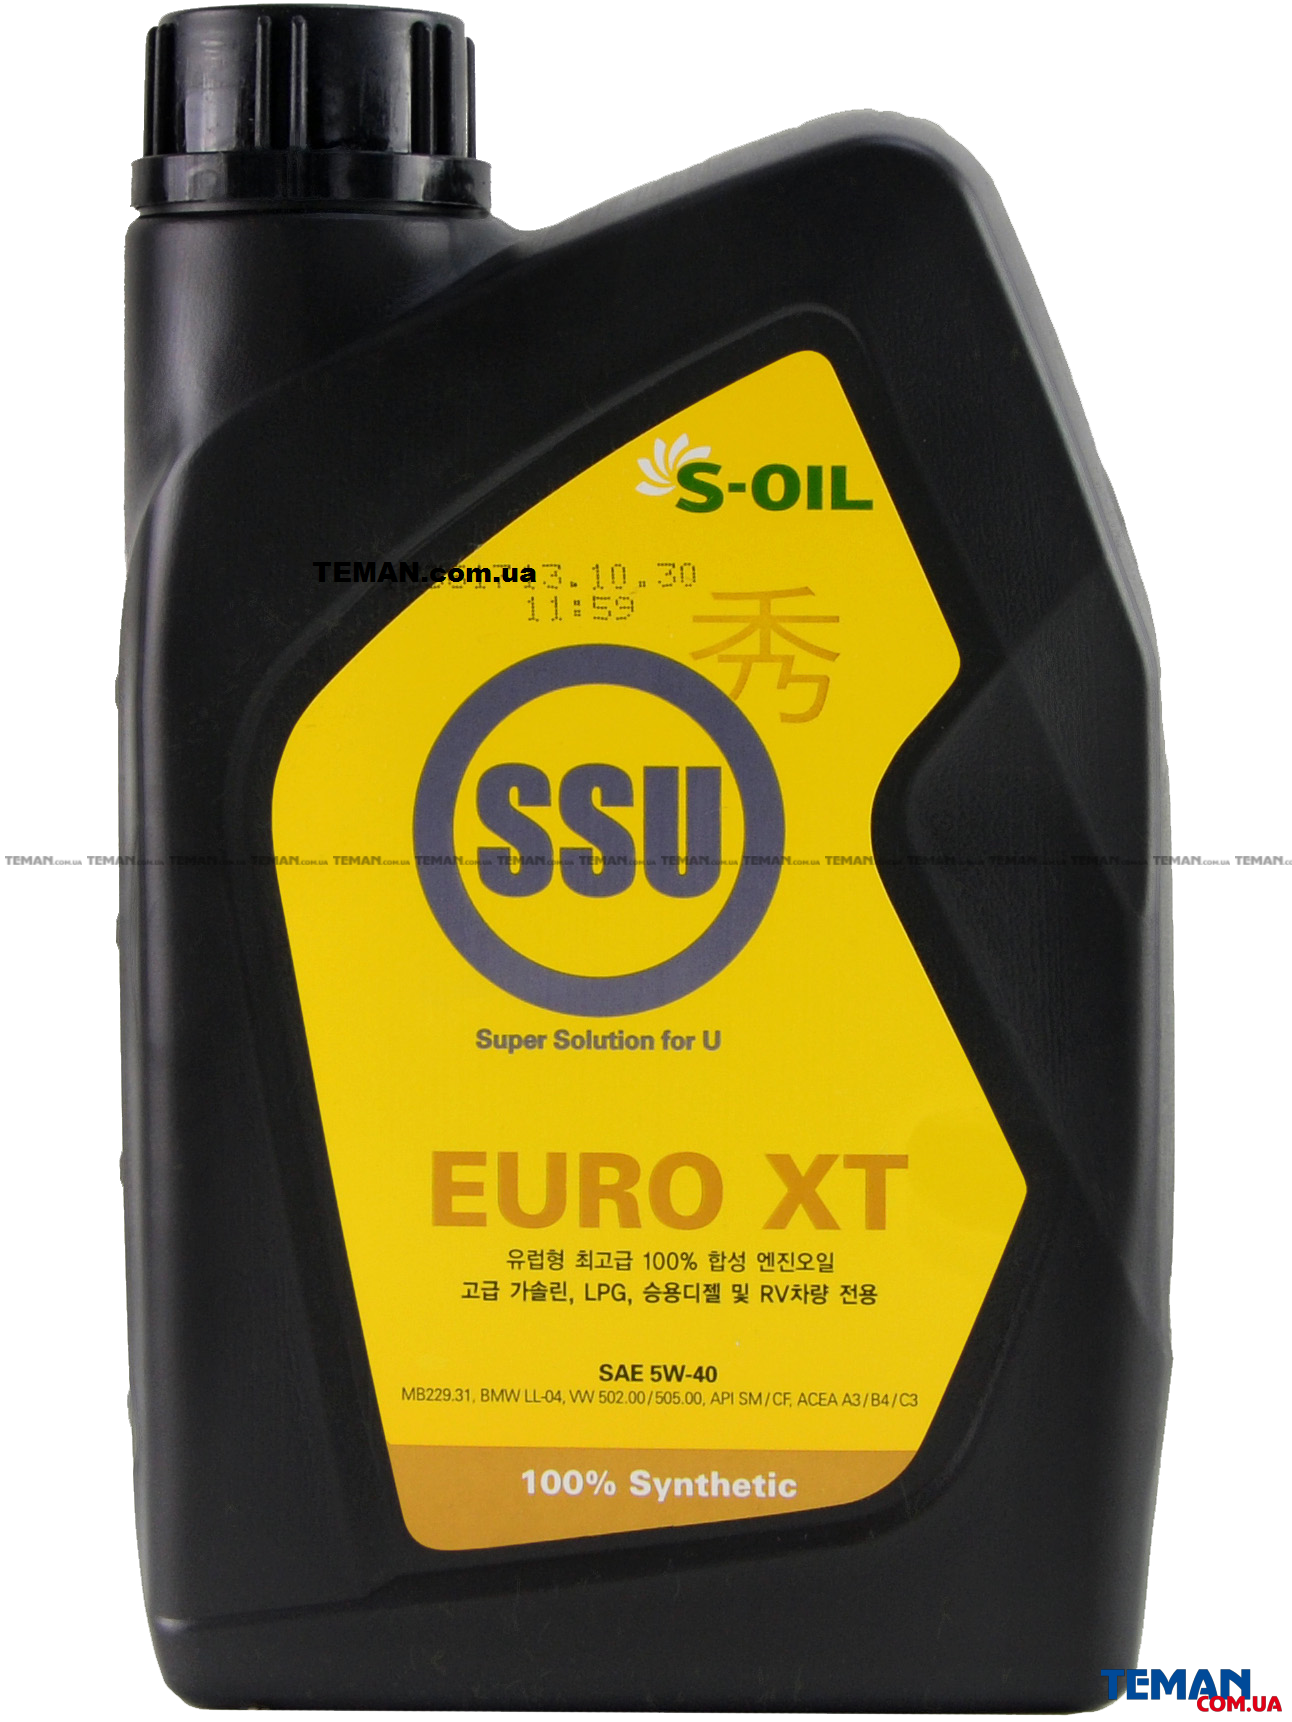  Купить Синтетическое моторное масло SSU EURO XT 5W40, 1 лS-OIL SSUEUROXT5W401   